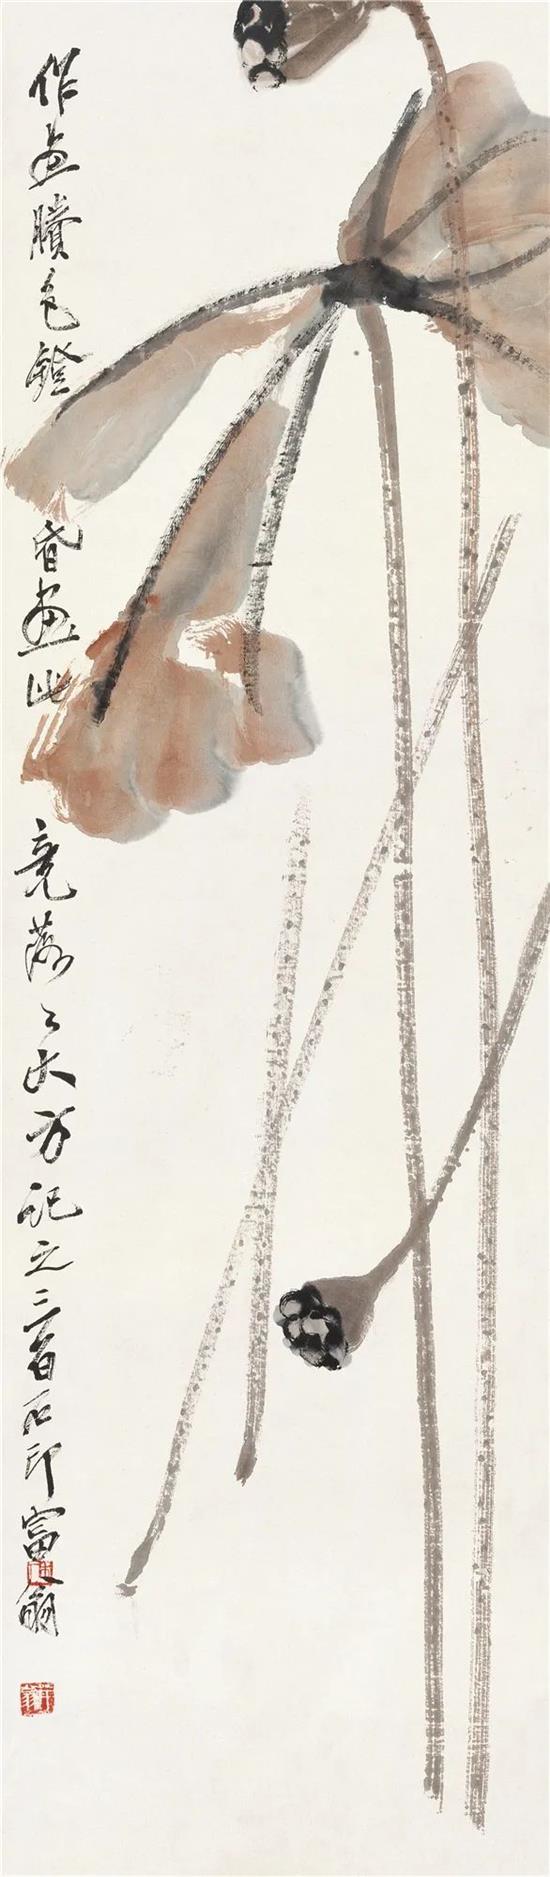 残荷 齐白石 117cm×34cm 无年款 纸本设色 北京画院藏